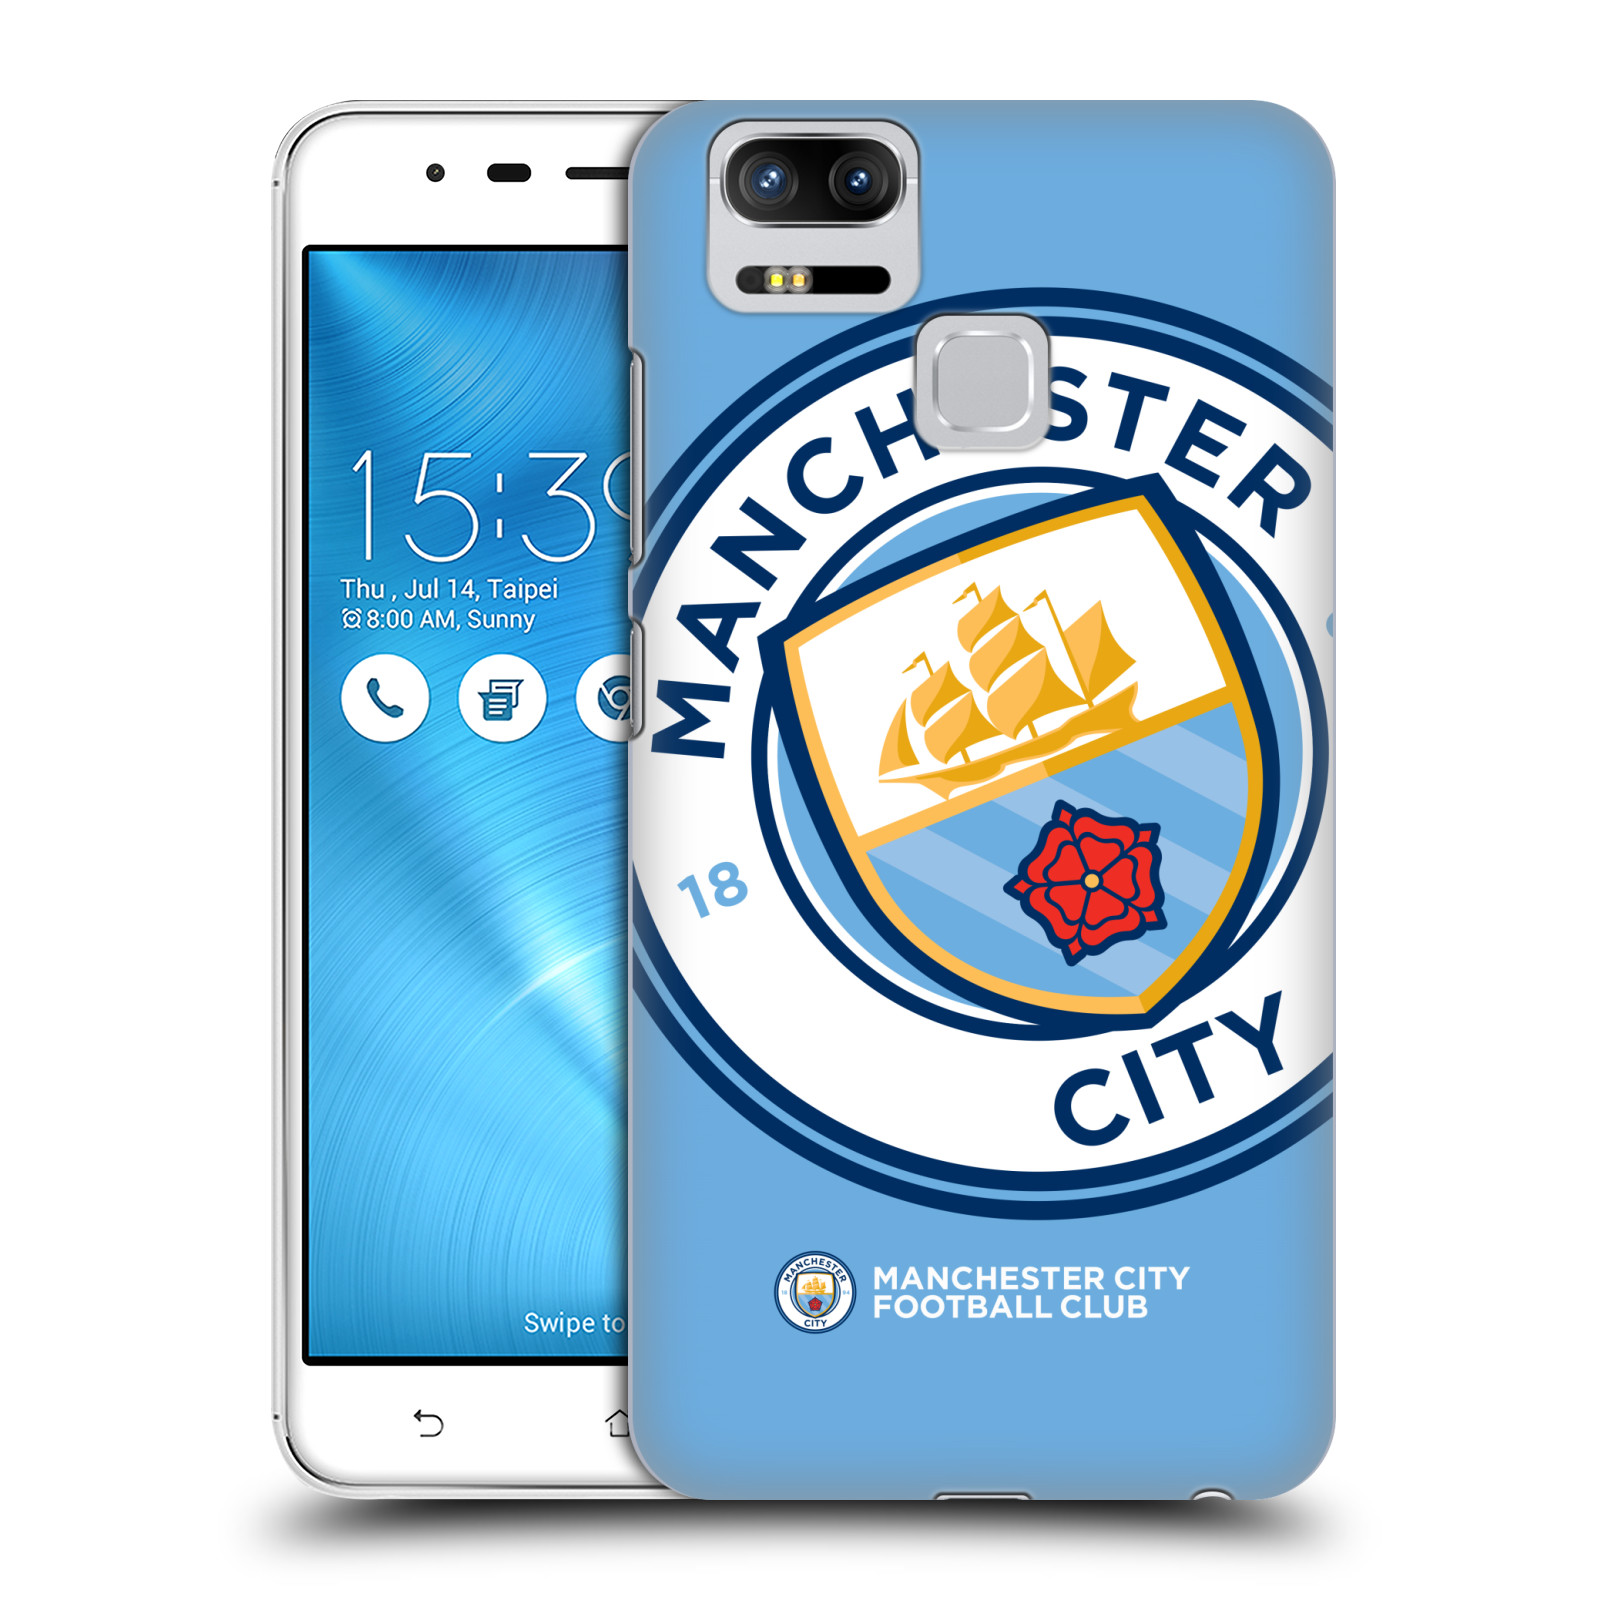 HEAD CASE plastový obal na mobil Asus Zenfone 3 Zoom ZE553KL Fotbalový klub Manchester City modrý velký přesahující znak